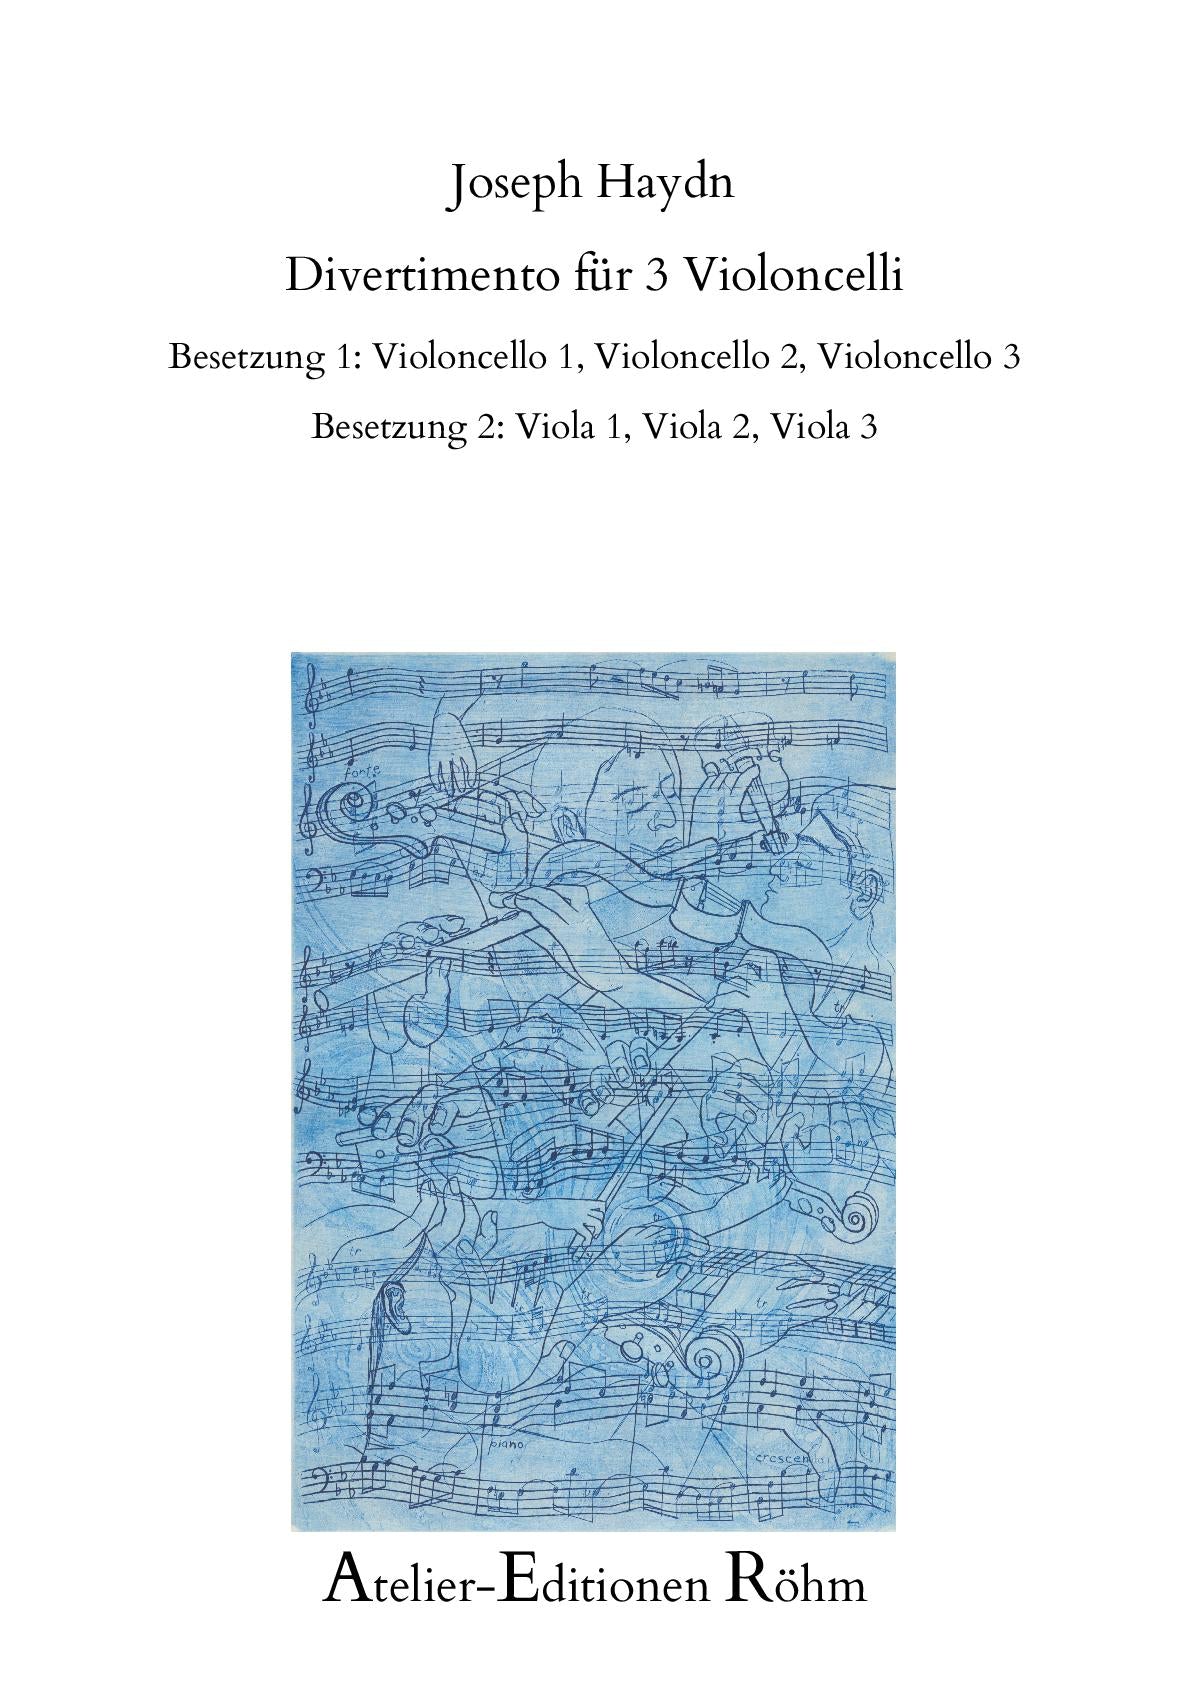 ハイドン：3本のチェロまたは3本のヴィオラのためのディヴェルティメント – Atelier-Editionen Röhm